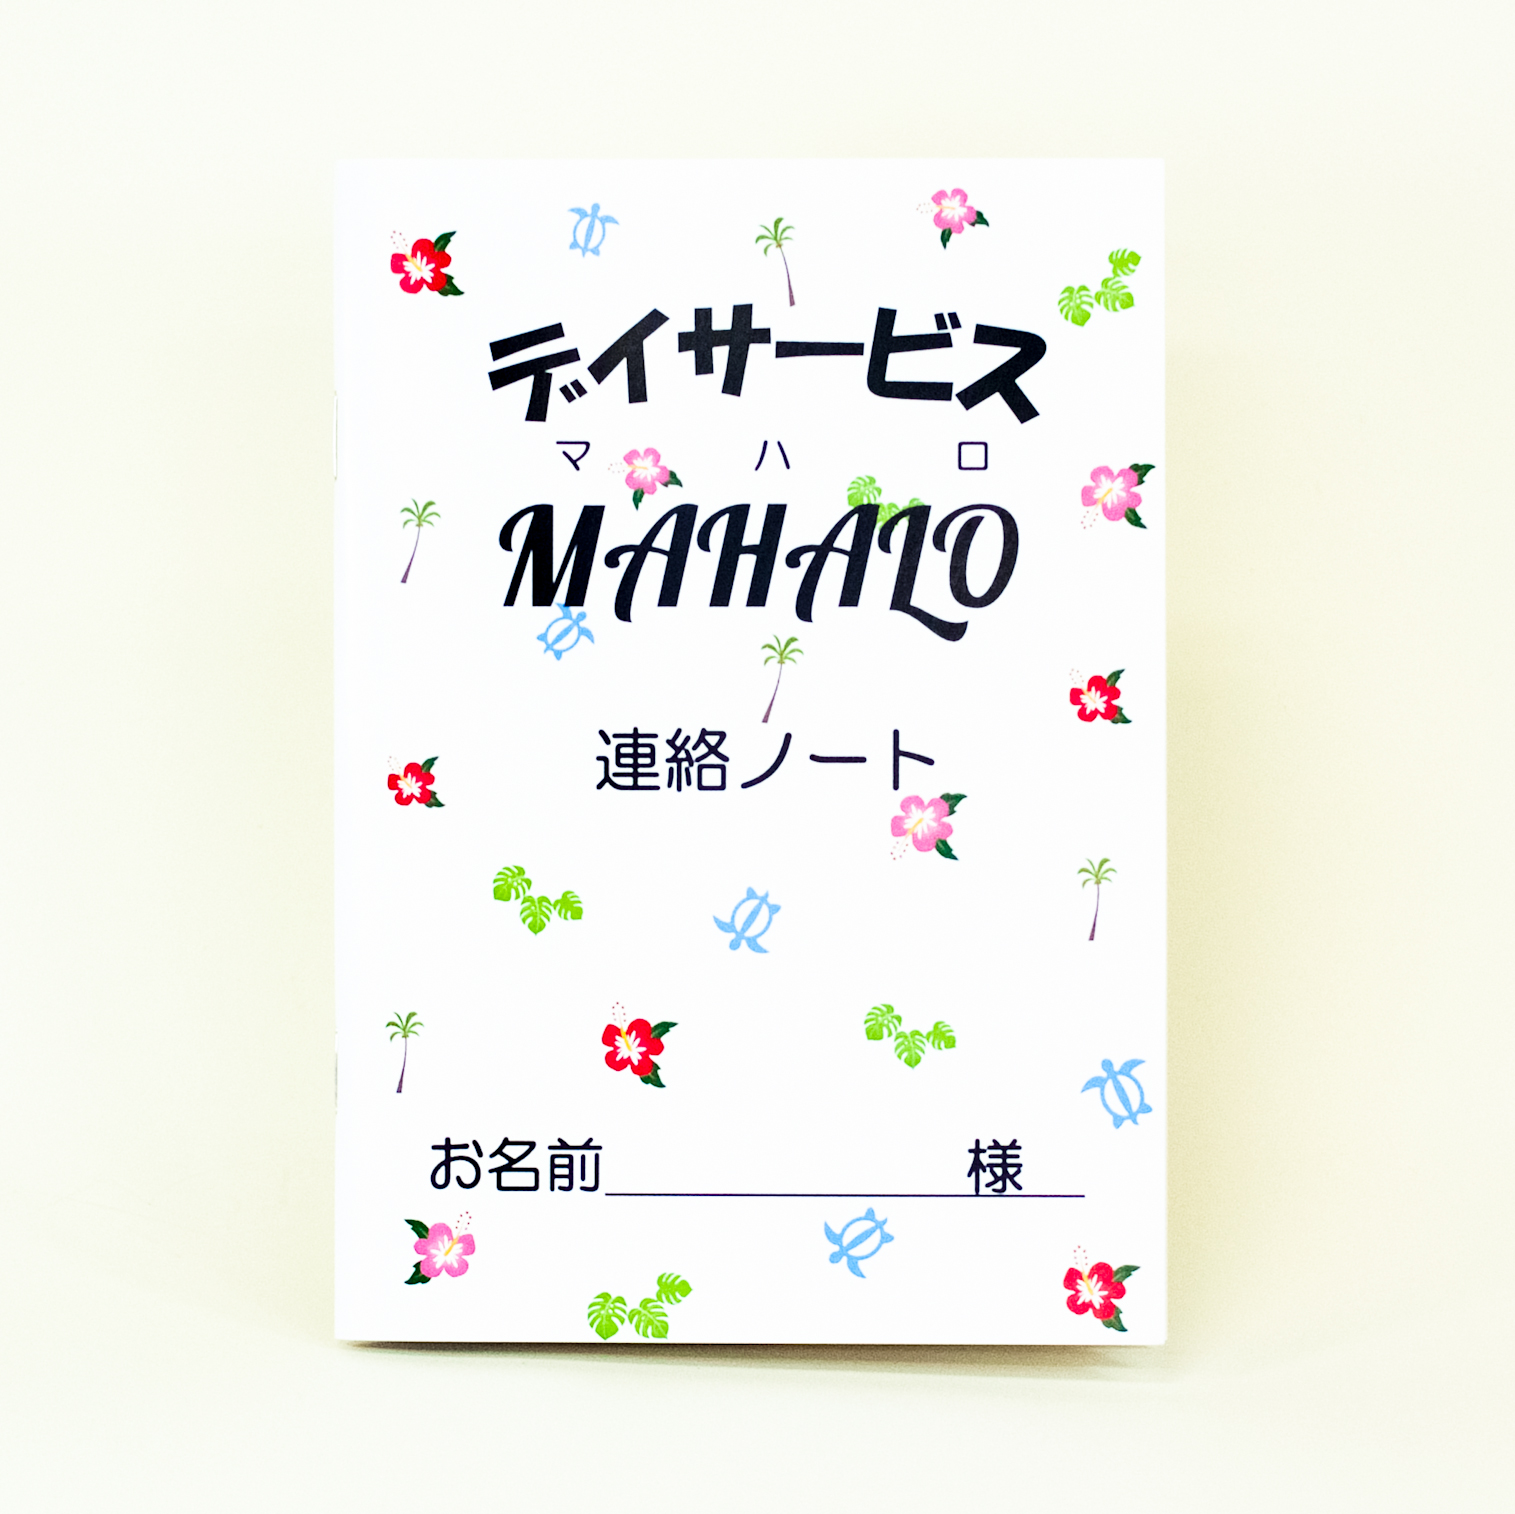 「株式会社キタムラ 様」製作のオリジナルノート